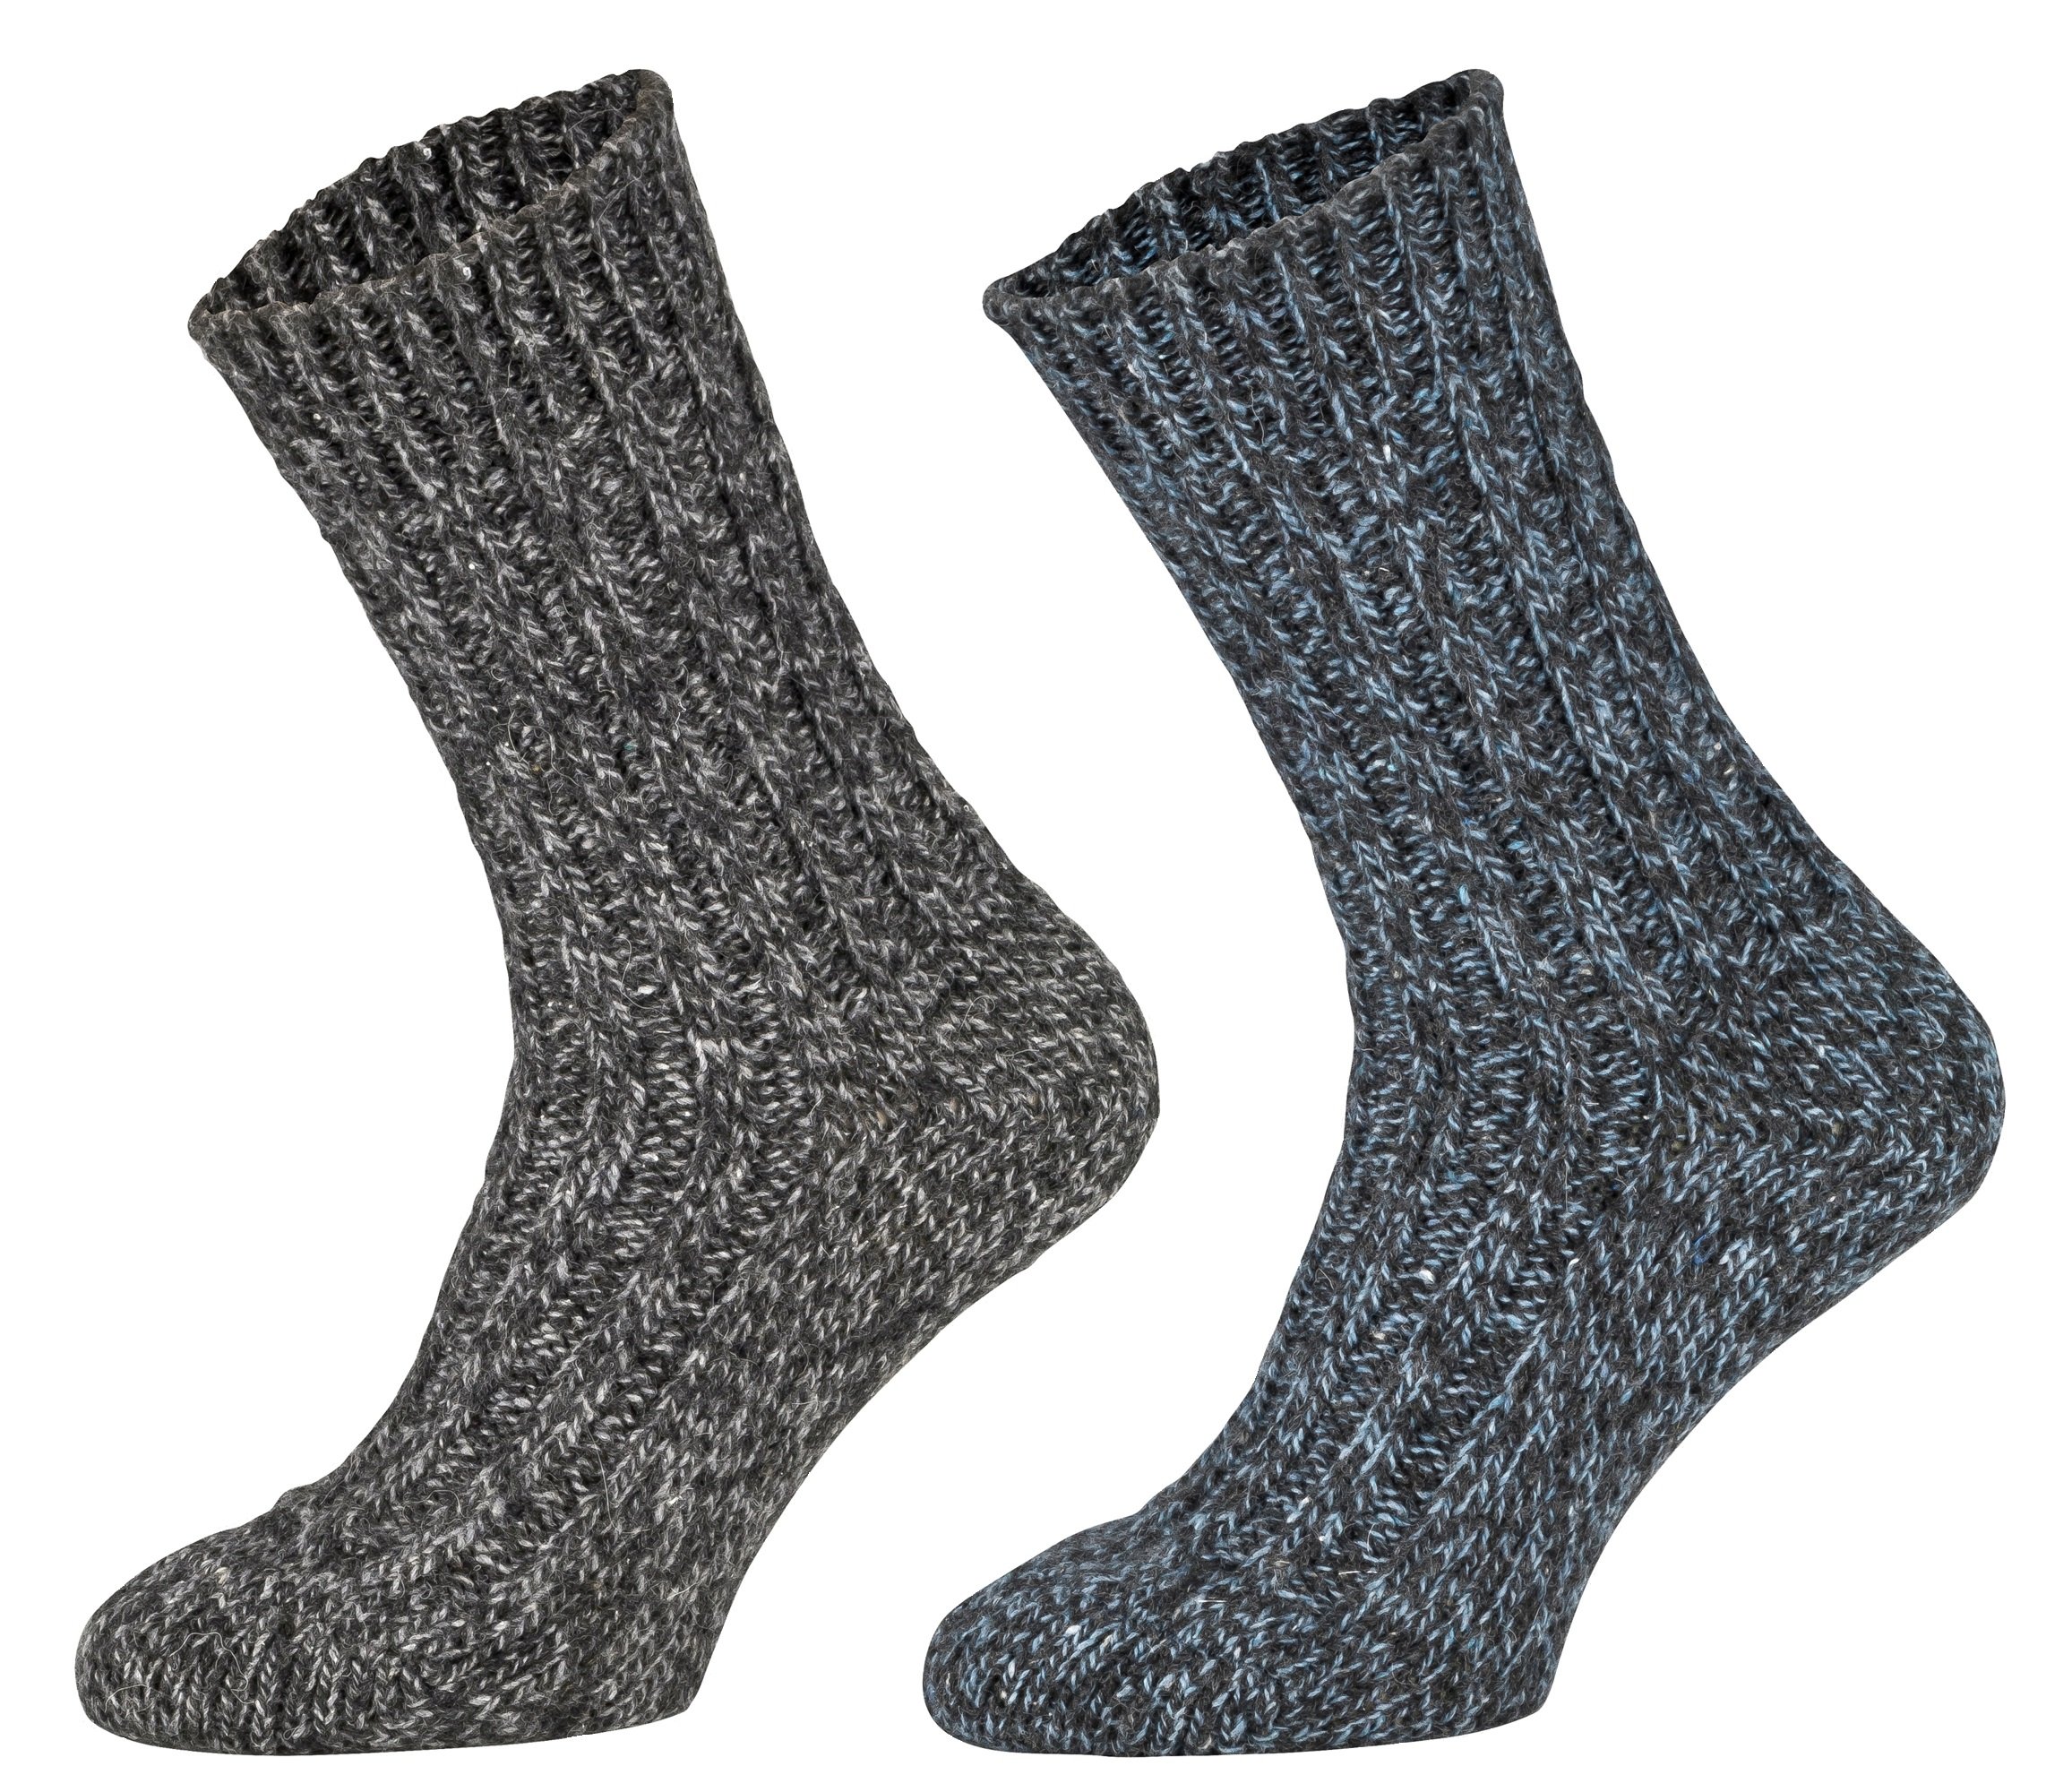 Tobeni 4 Paar warme Damen Herren Norweger Socken Wintersocken Schafwollsocken vorgewaschen Unisex Farbe 2x Anthrazit 2x Marine Grösse 43-46